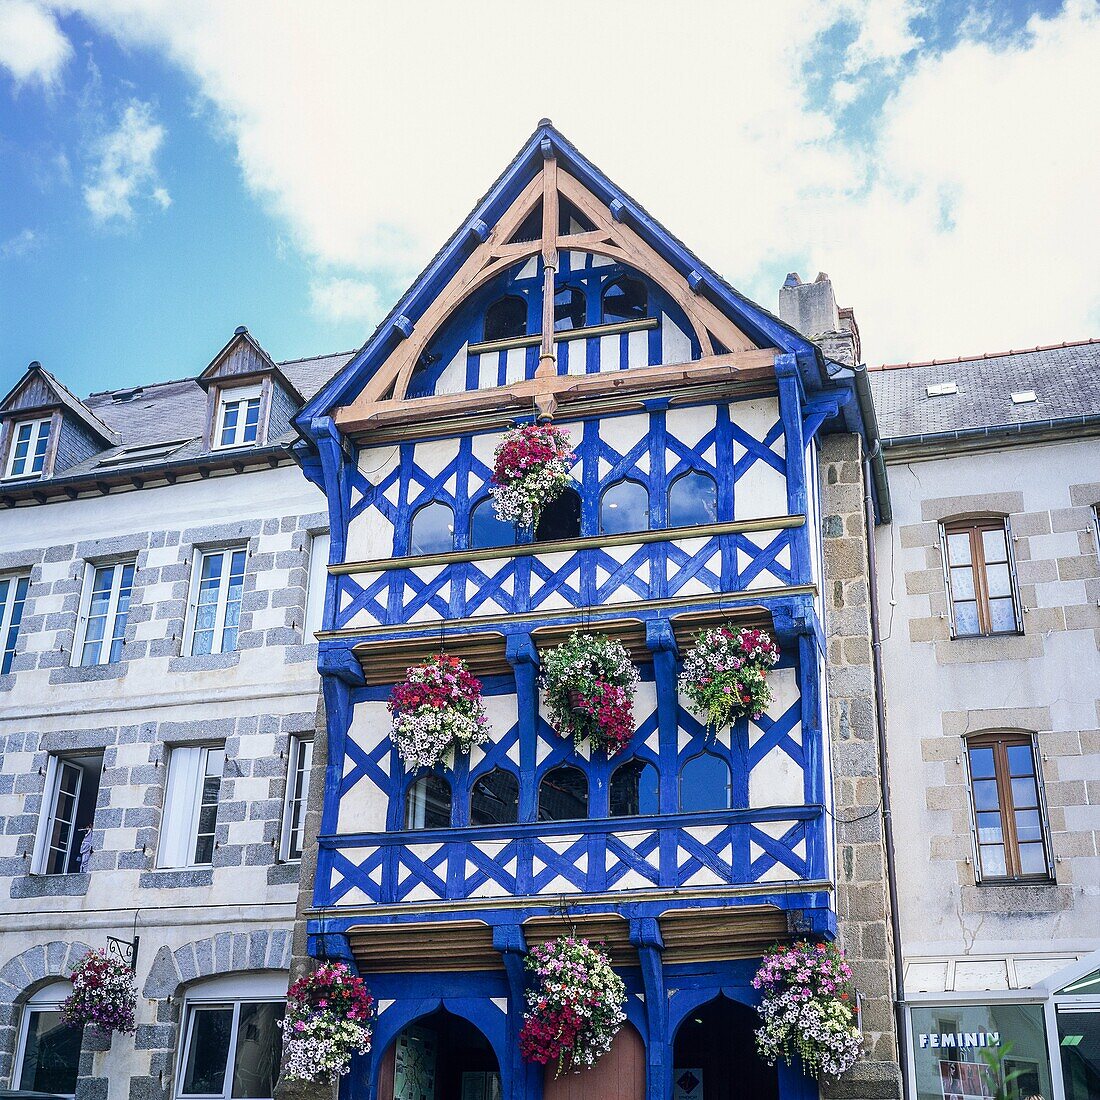 ´Maison de la Tour Eiffel´´ house 16th Century Pontrieux Brittany France.